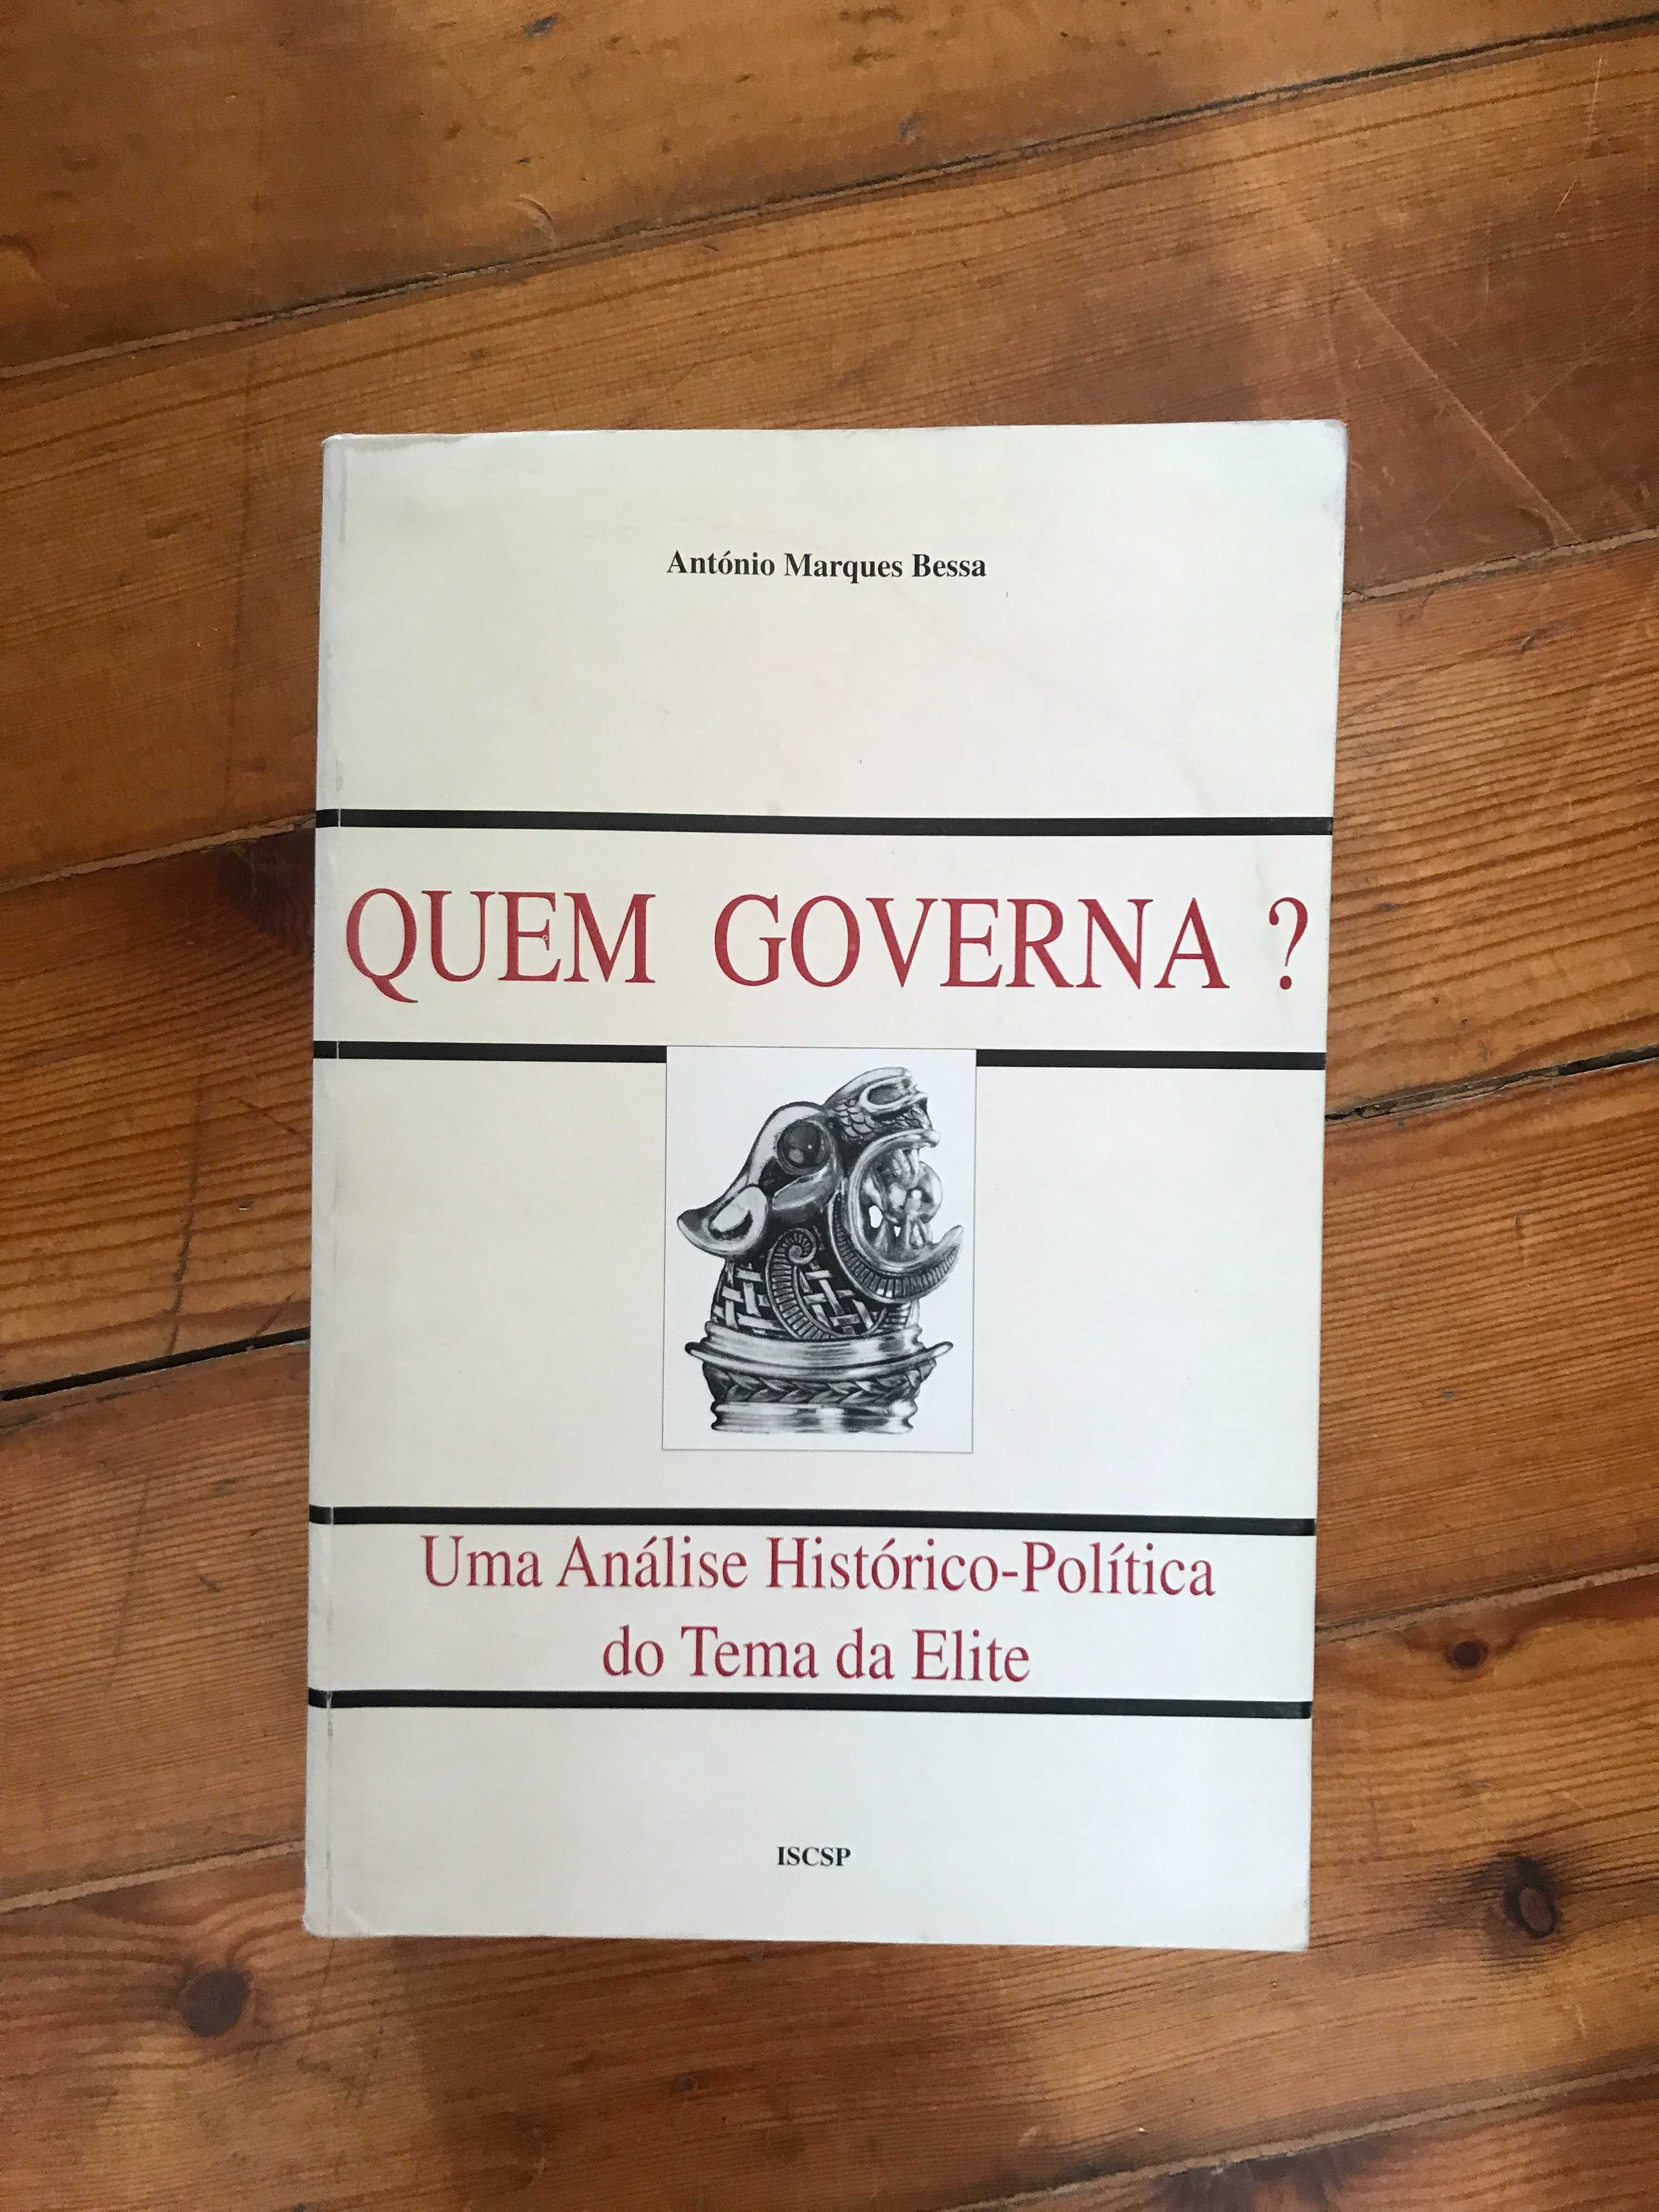 Livro: Quem Governa? do prof. António Marques Bessa